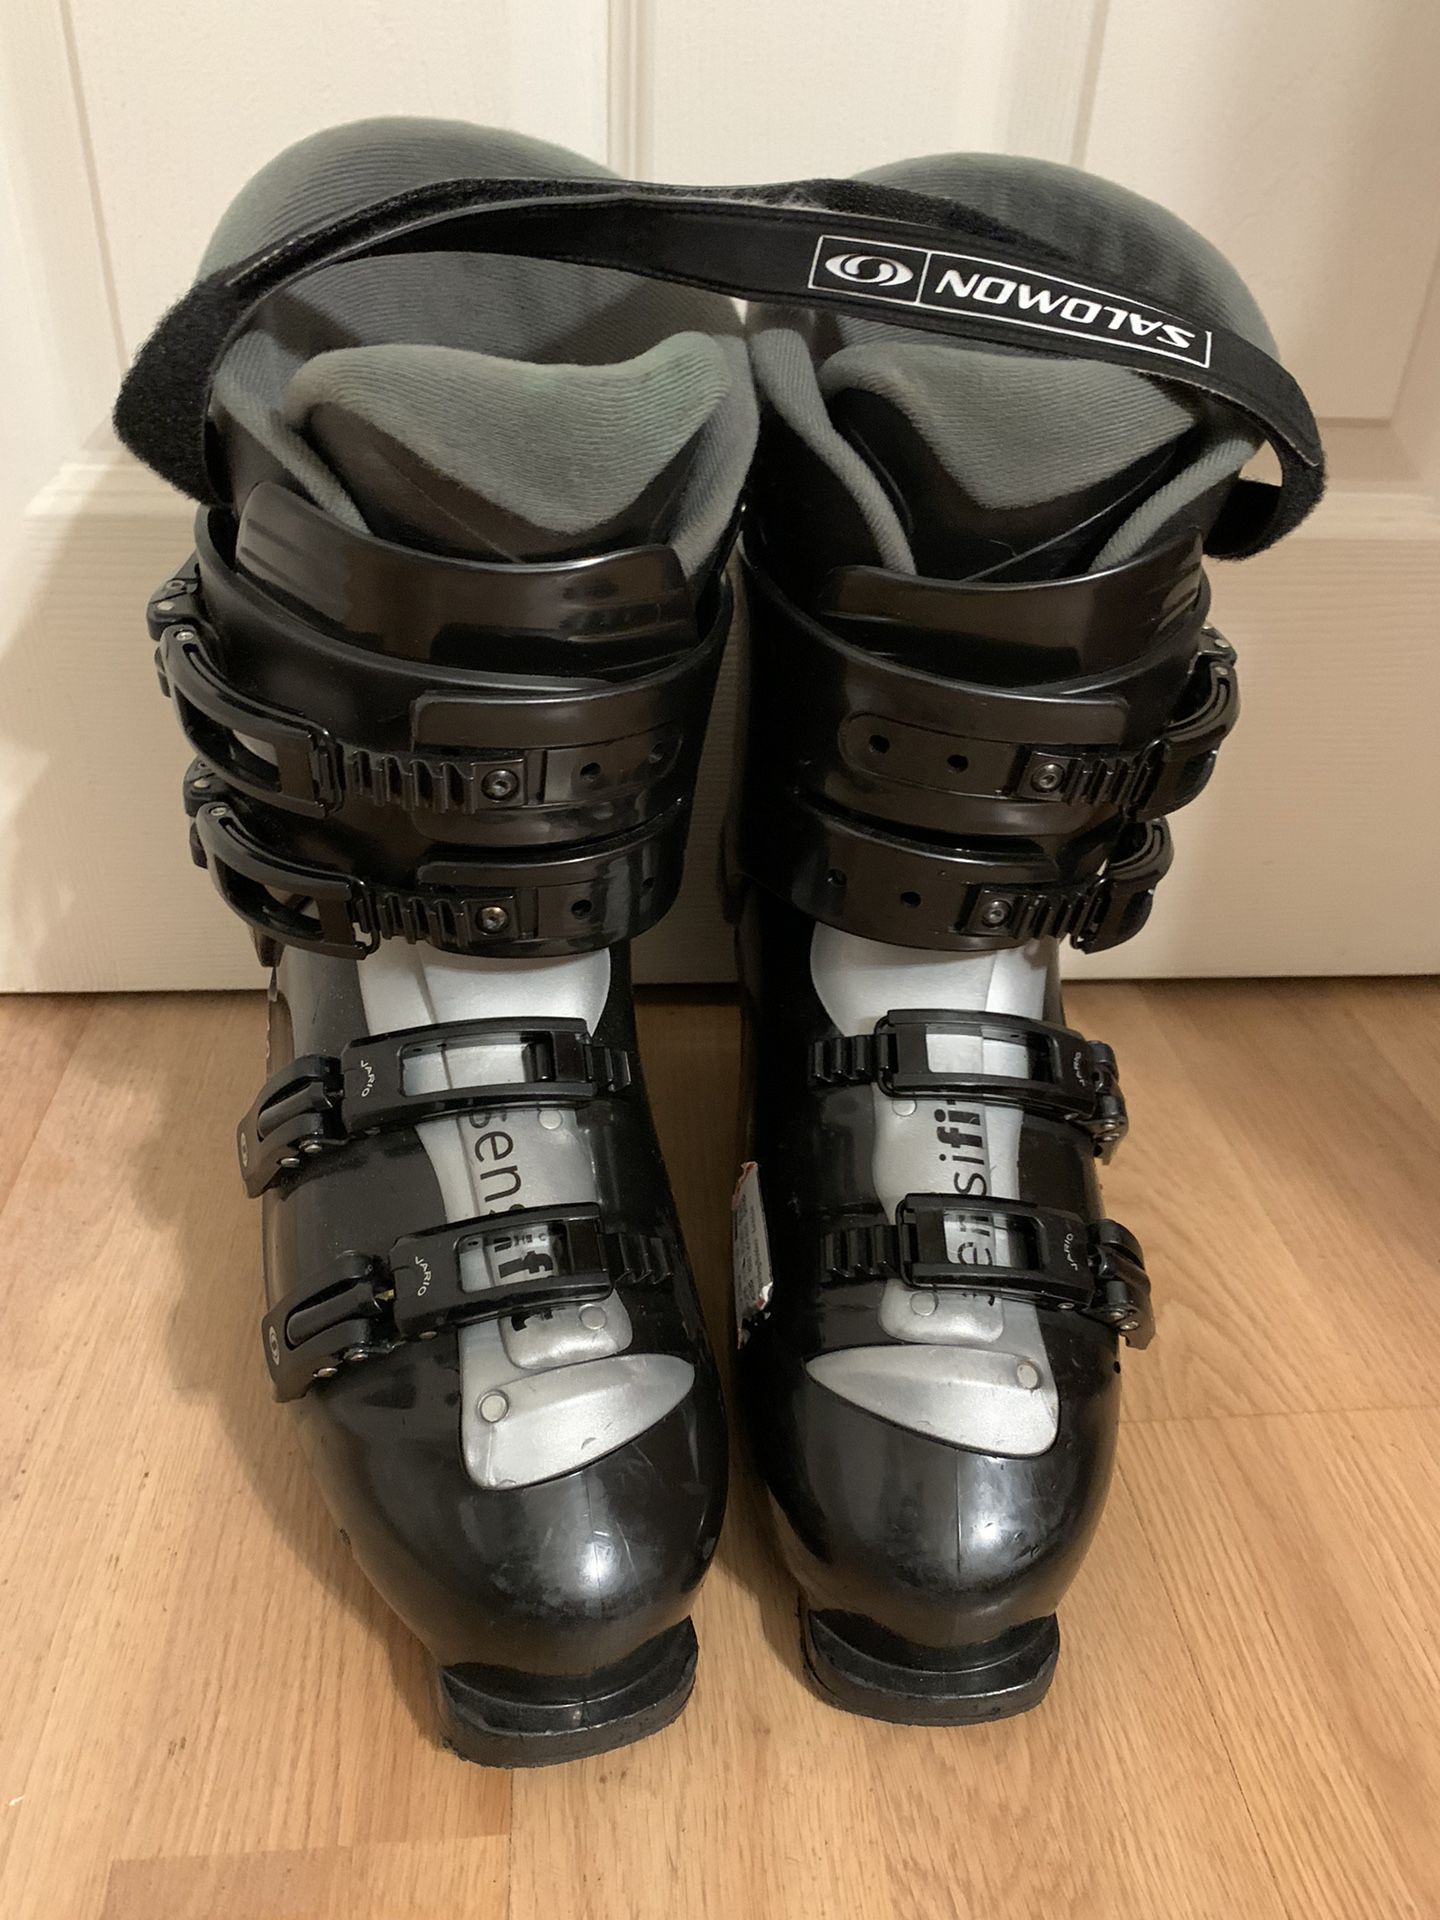 Salomon Ski Boots Performa 4.0 Size 11 1/2 or 29.5